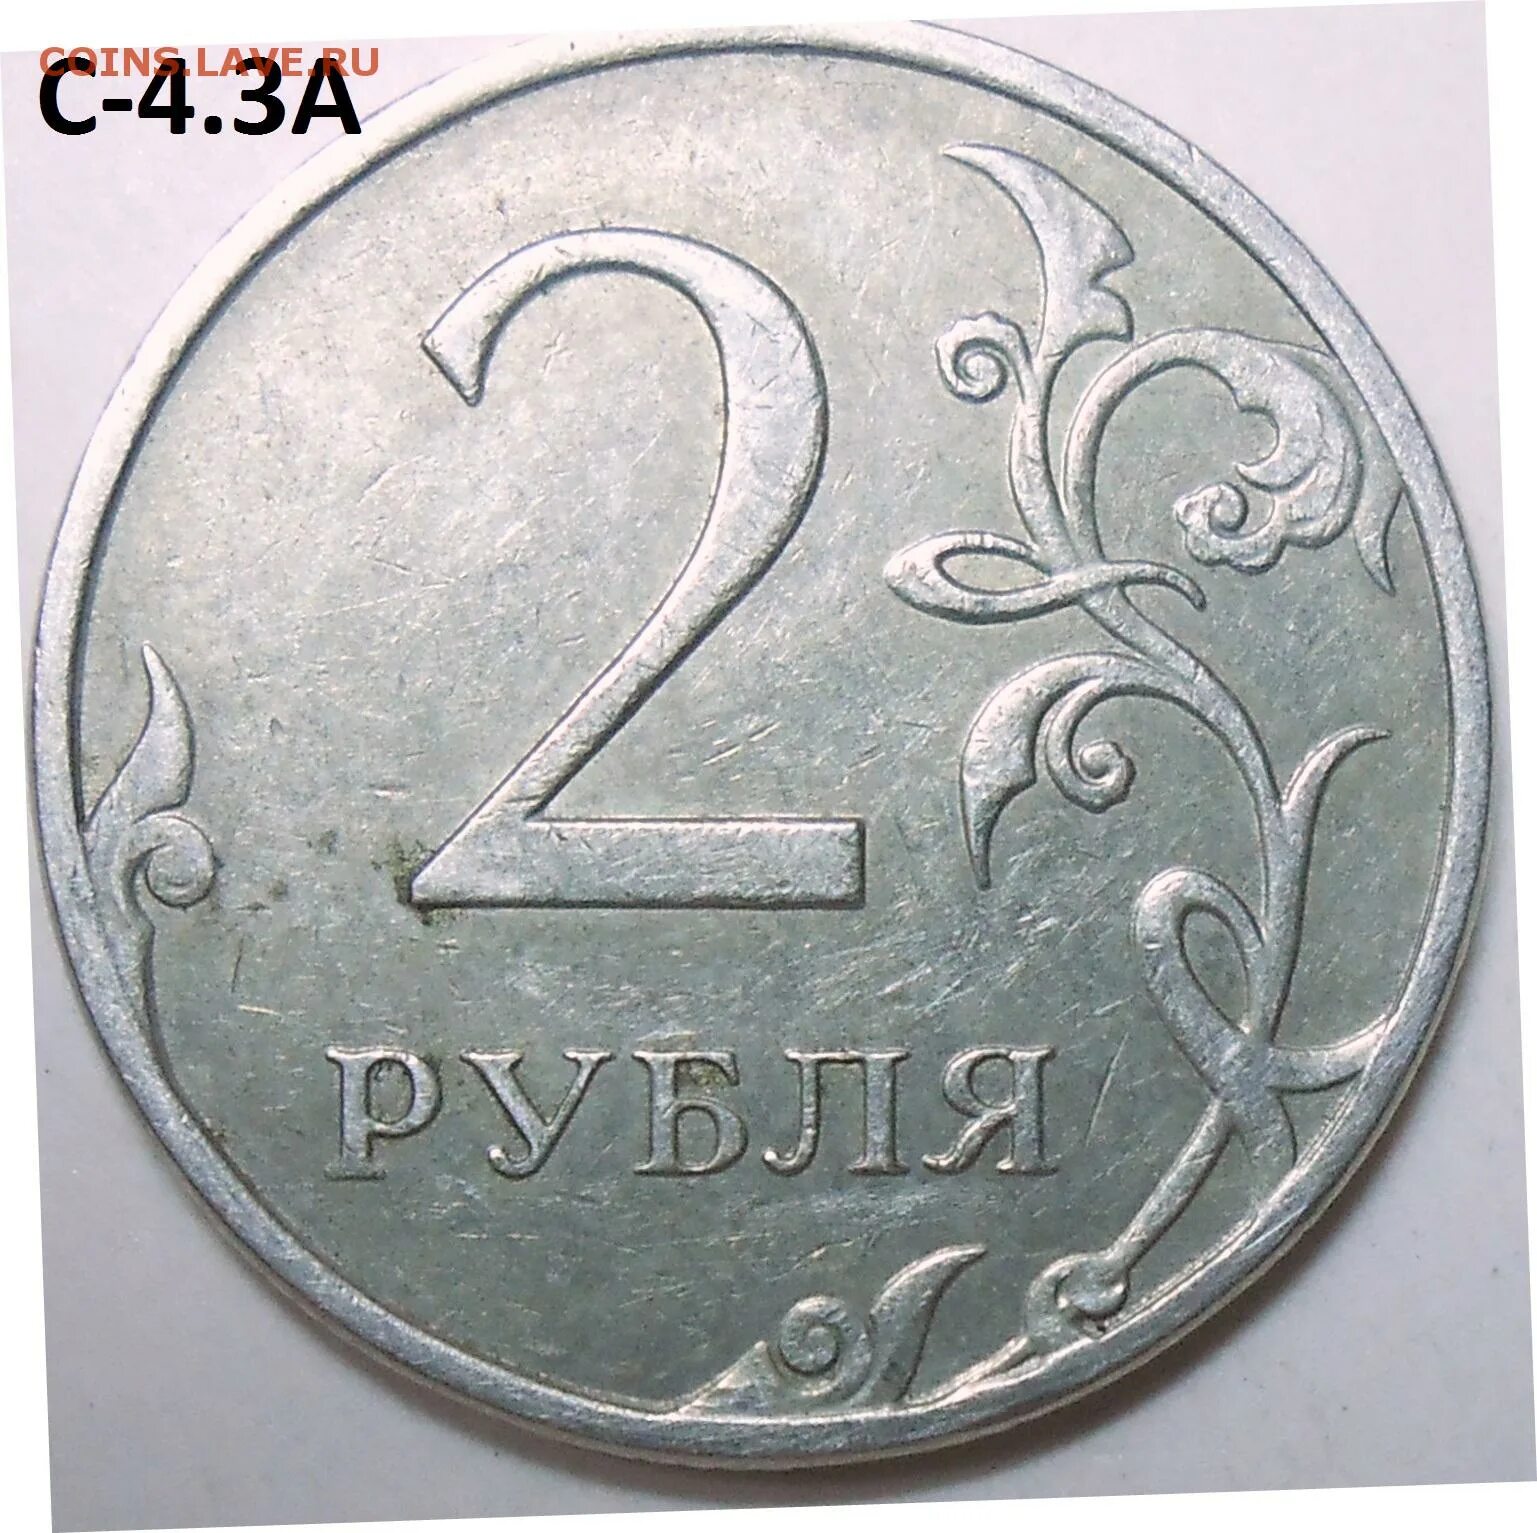 22 апр 15. 2 Рубля 1997 ММД. 2 Руб 1997 ММД. 2 Рубля 1997 СПДМ золото. Редкий ли 2 рубль 1997.